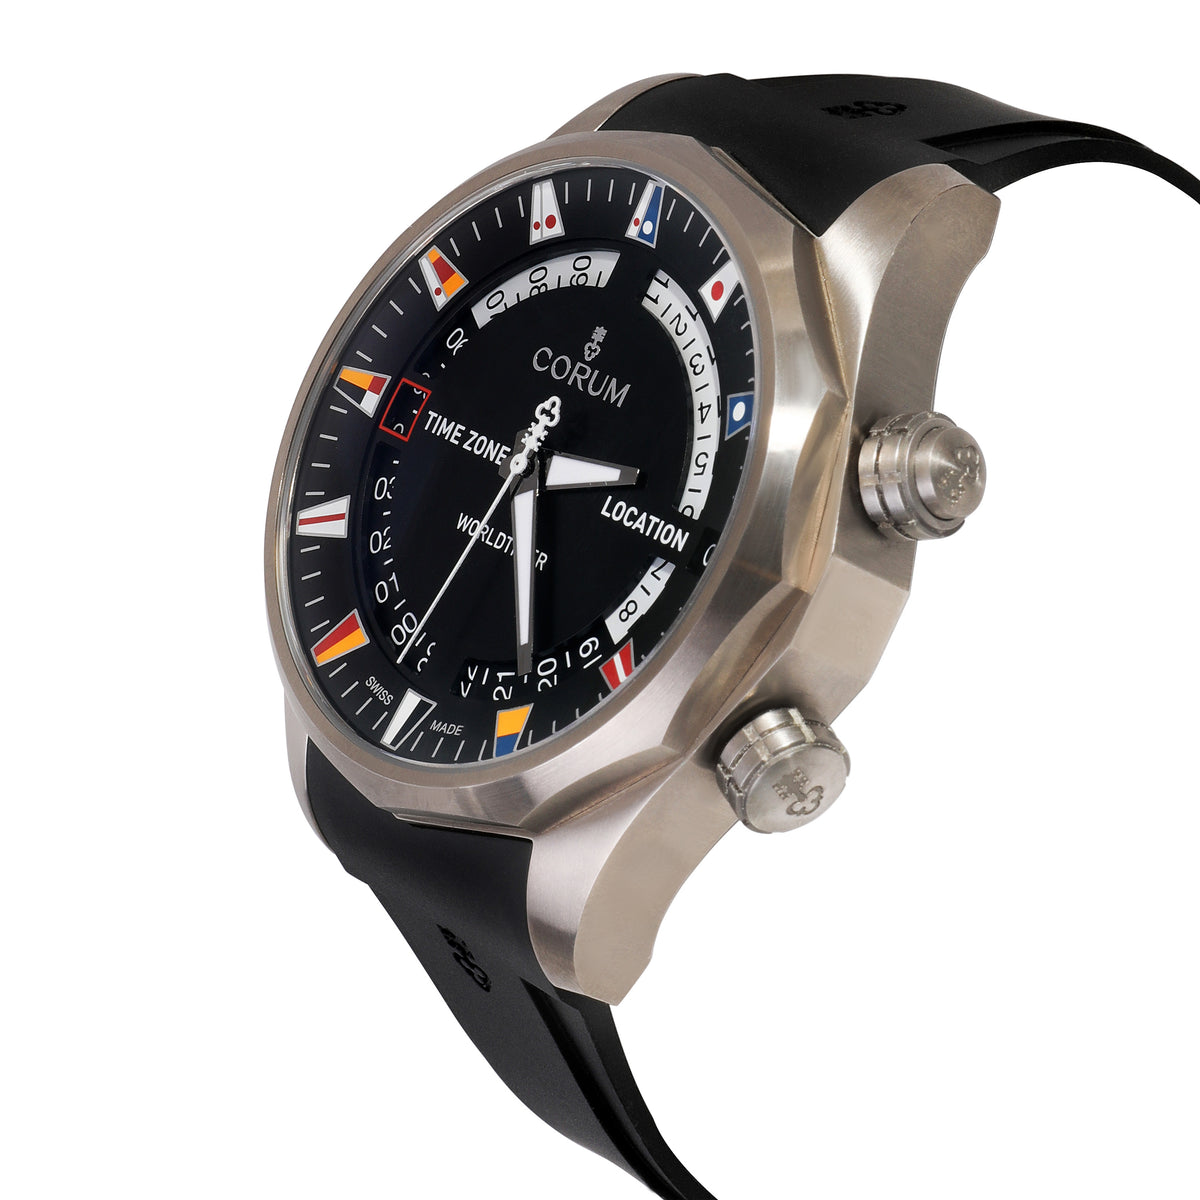 Admiral's Cup Worldtimer 637.101.04/F371 Men's Watch in  Titanium